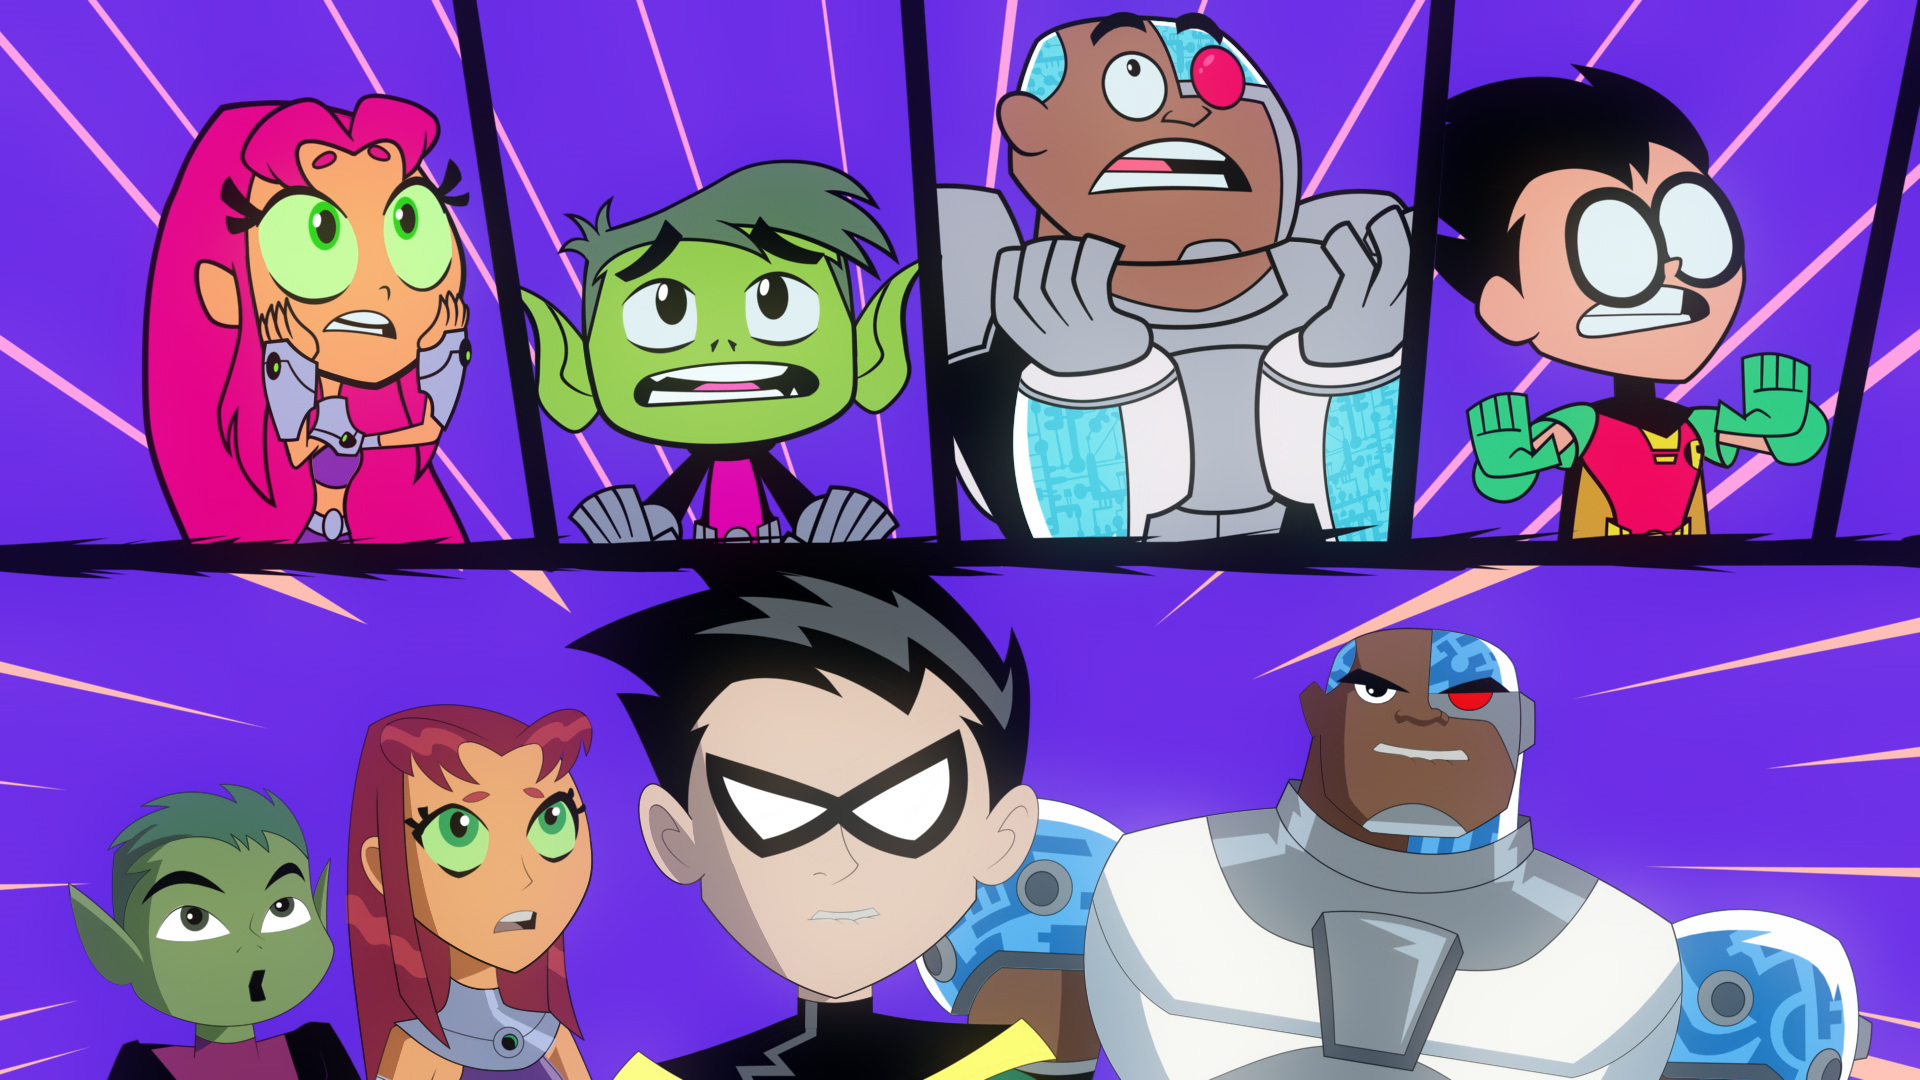 Cartoon Network irá exibir Teen Titans Go vs Os Jovens Titãs neste sábado.  – Anima.Ação